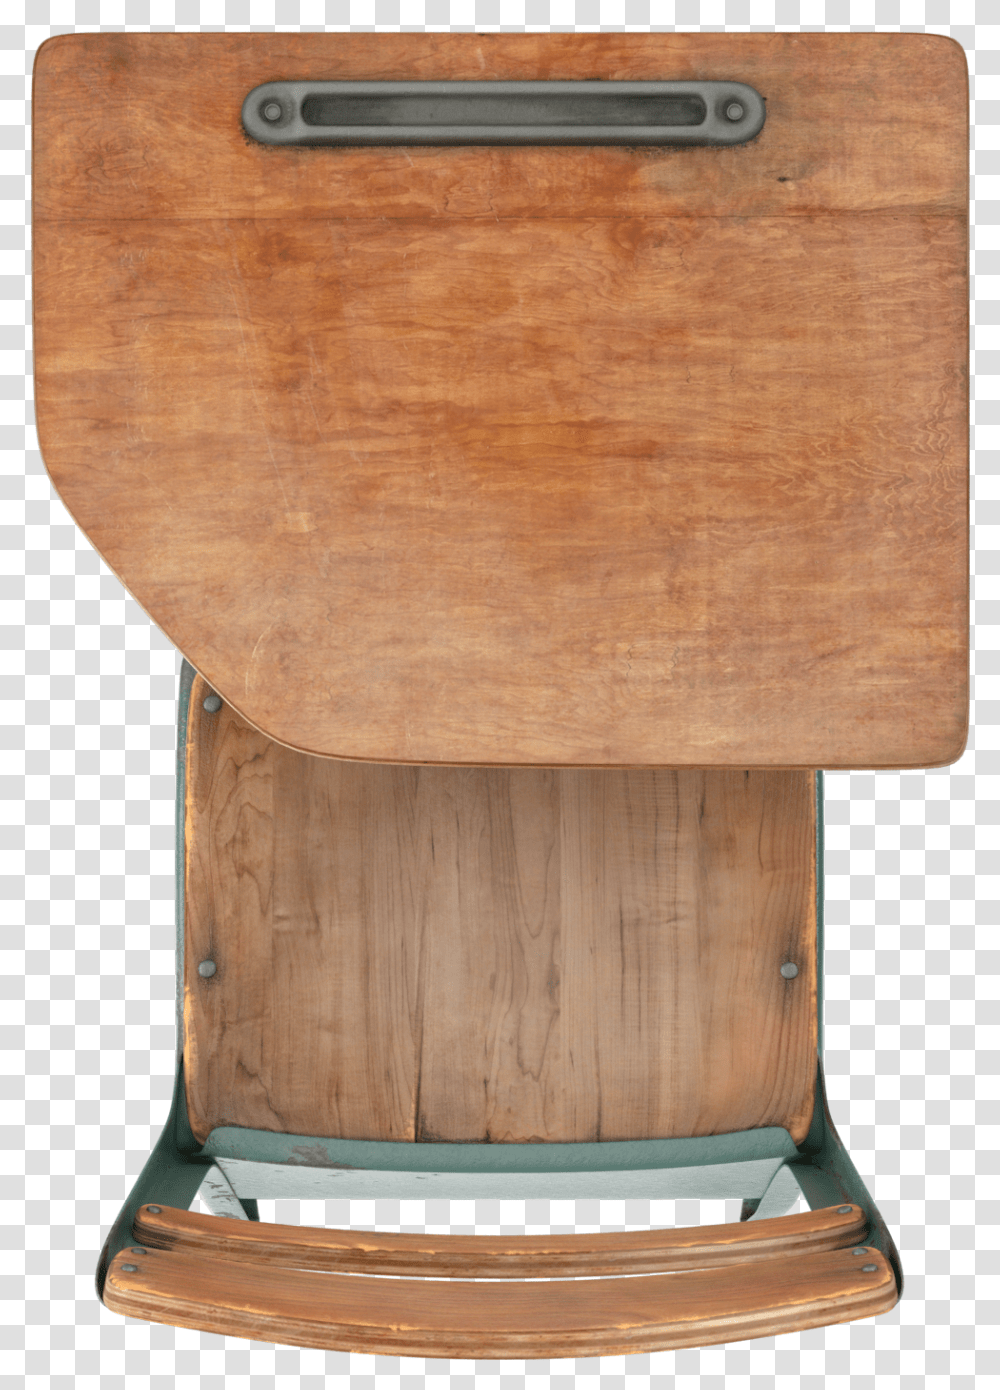 Antique School Desk Image Plywood, Tabletop, Furniture, Hardwood, Drawer Transparent Png